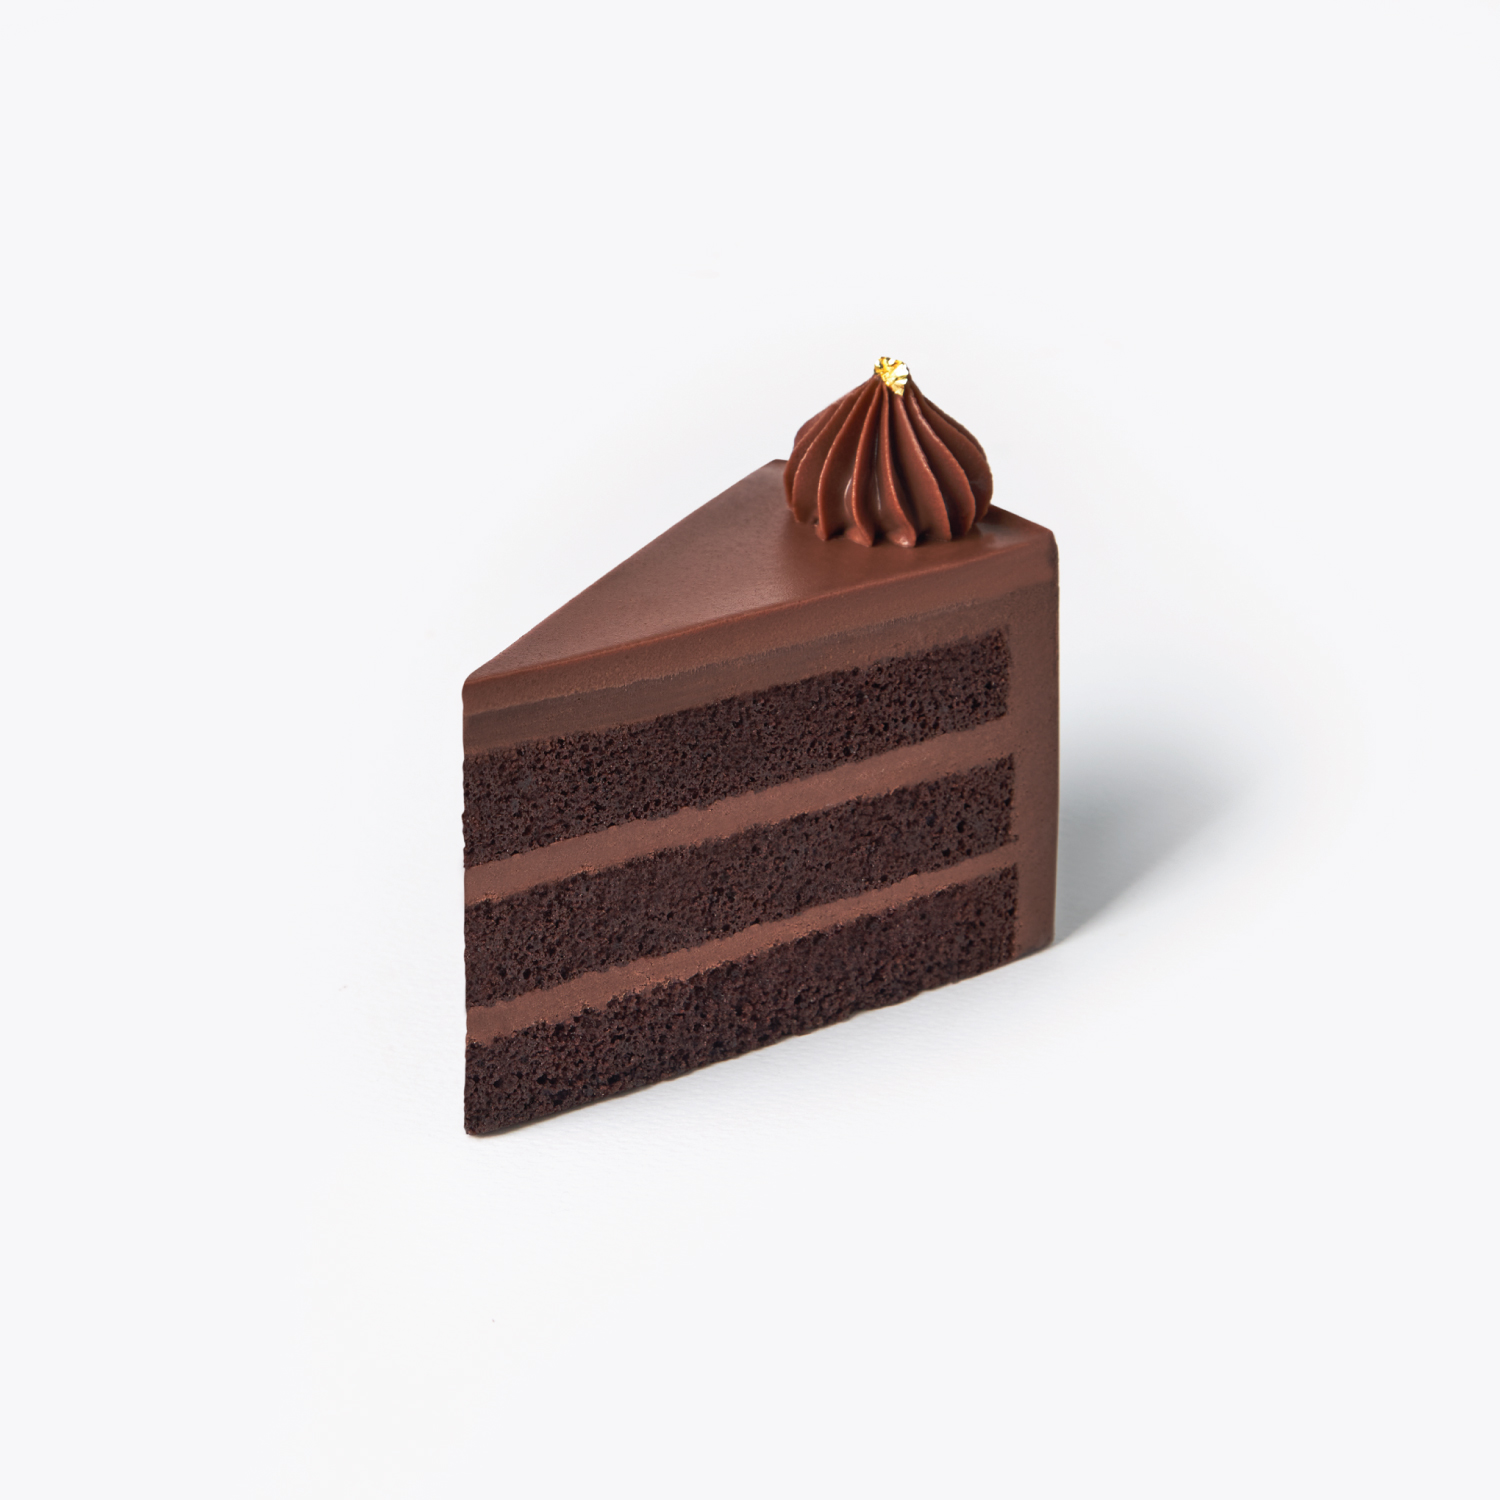 เค้กแช่แข็ง : SYNOVA เค้กช็อกโกแลตคูเวอร์เจอร์(Couverture Chocolate 70%) (แพ็ค)